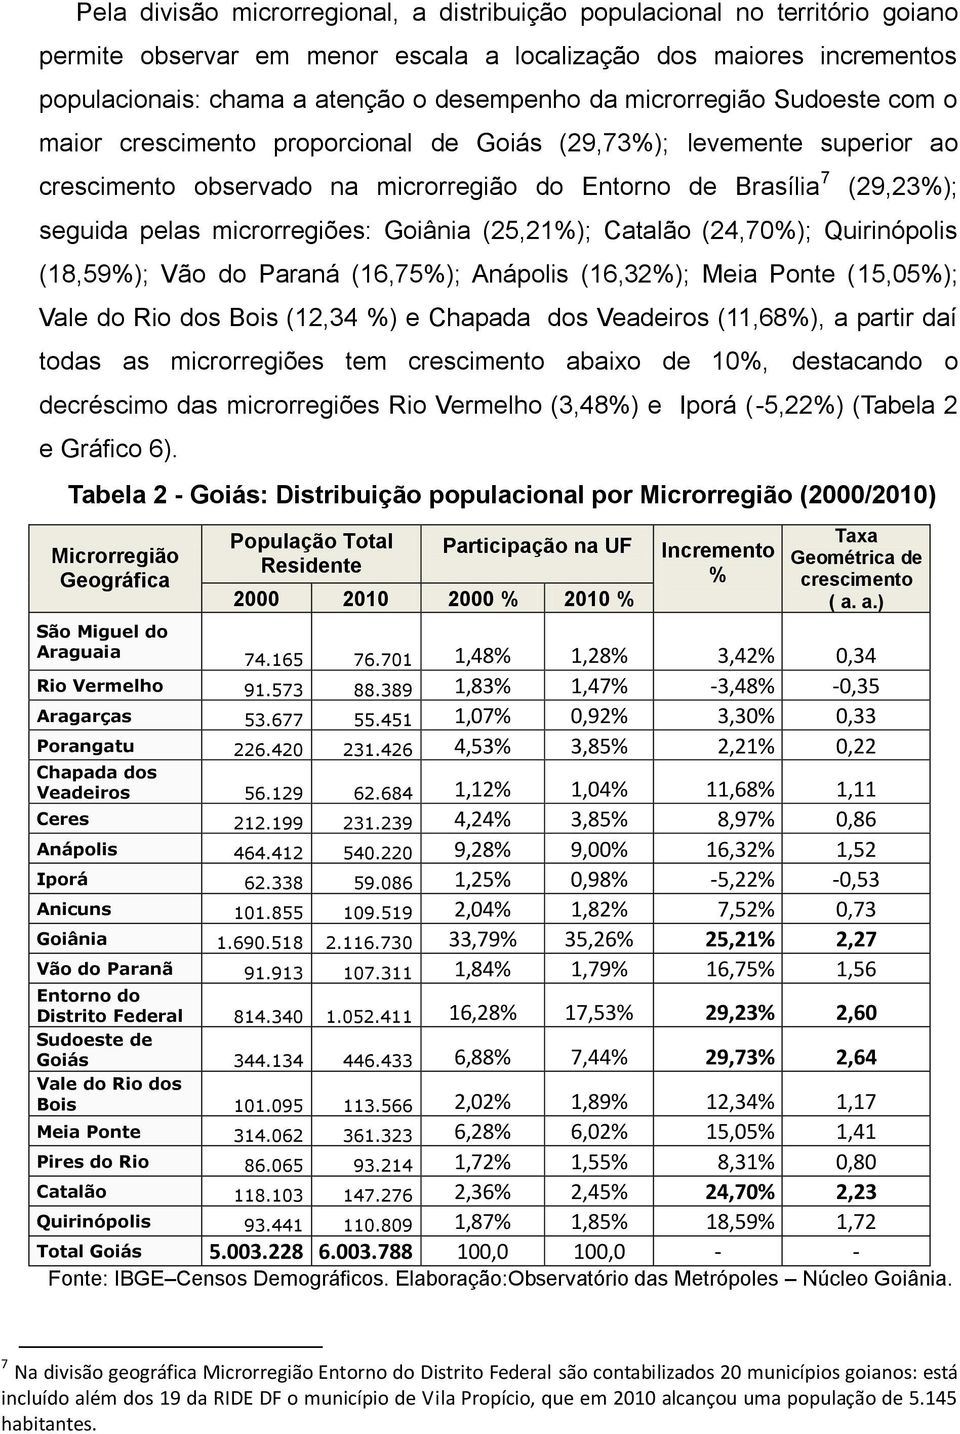 microrregiões: Goiânia (25,21%); Catalão (24,70%); Quirinópolis (18,59%); Vão do Paraná (16,75%); Anápolis (16,32%); Meia Ponte (15,05%); Vale do Rio dos Bois (12,34 %) e Chapada dos Veadeiros